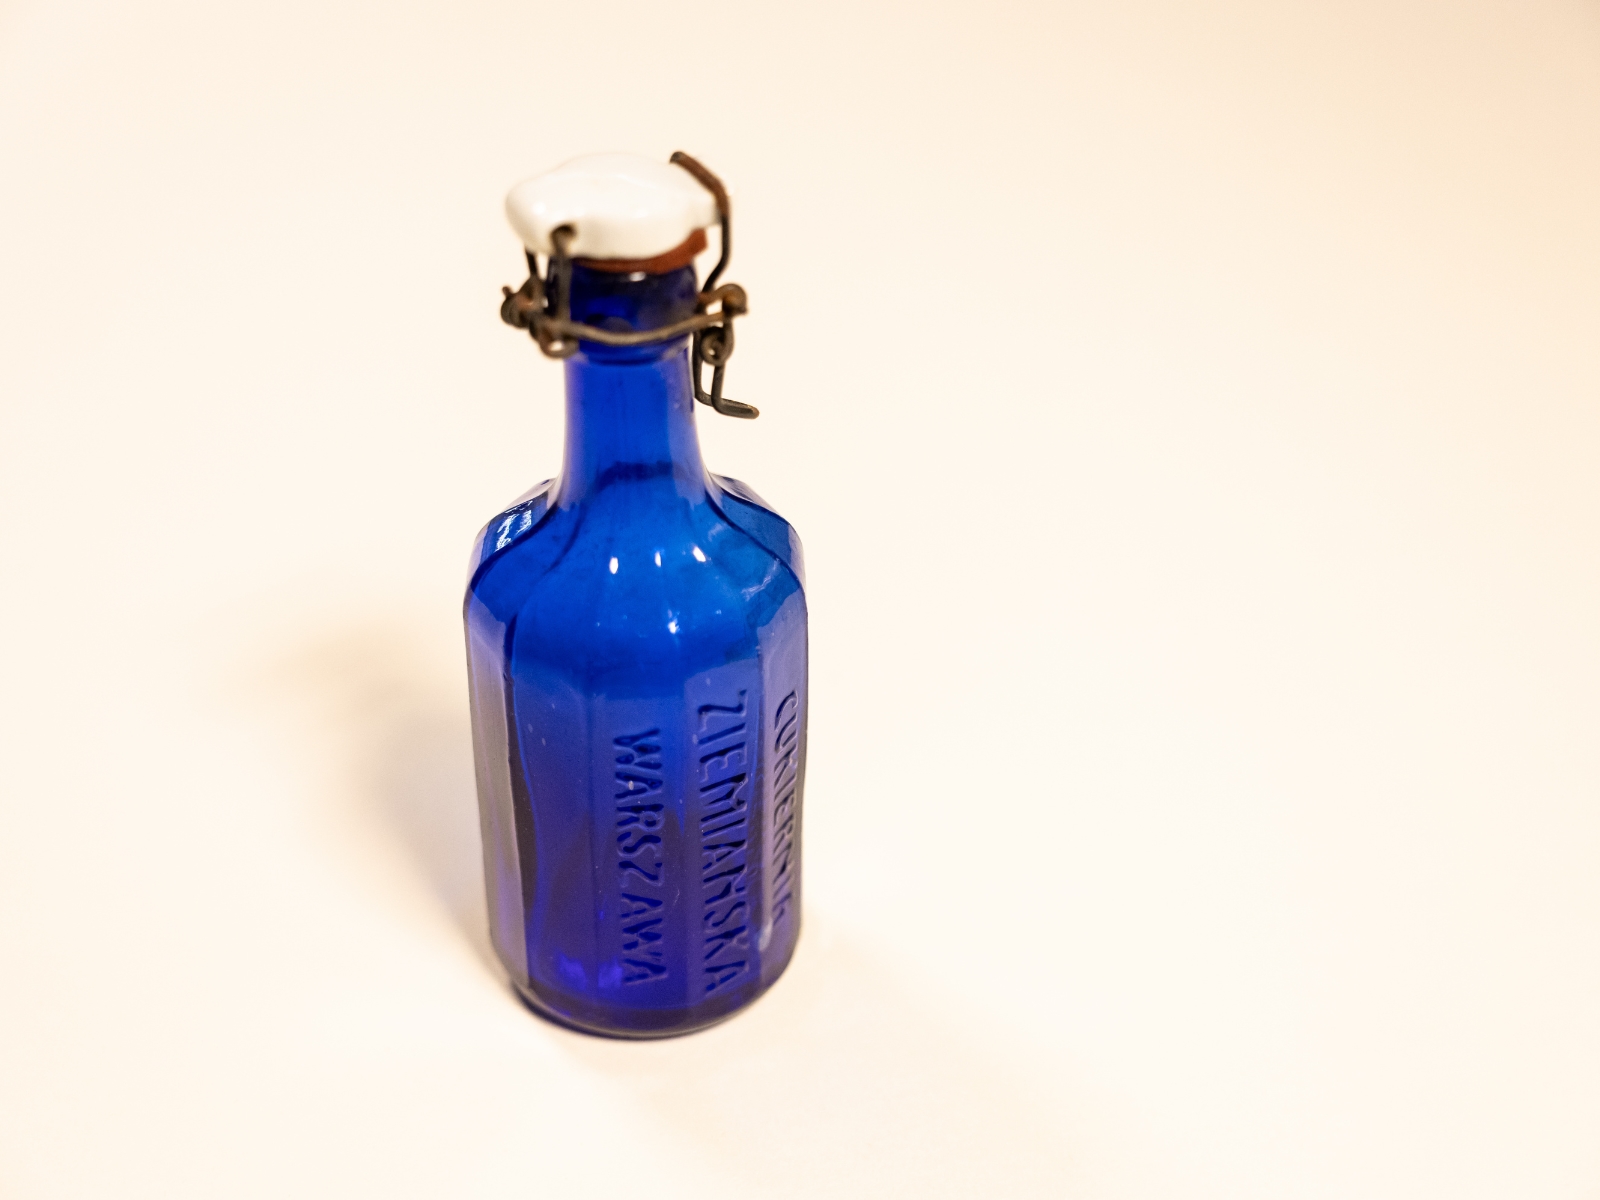 Niebieska butelka z napisem Ziemiańska stoi pionowo.